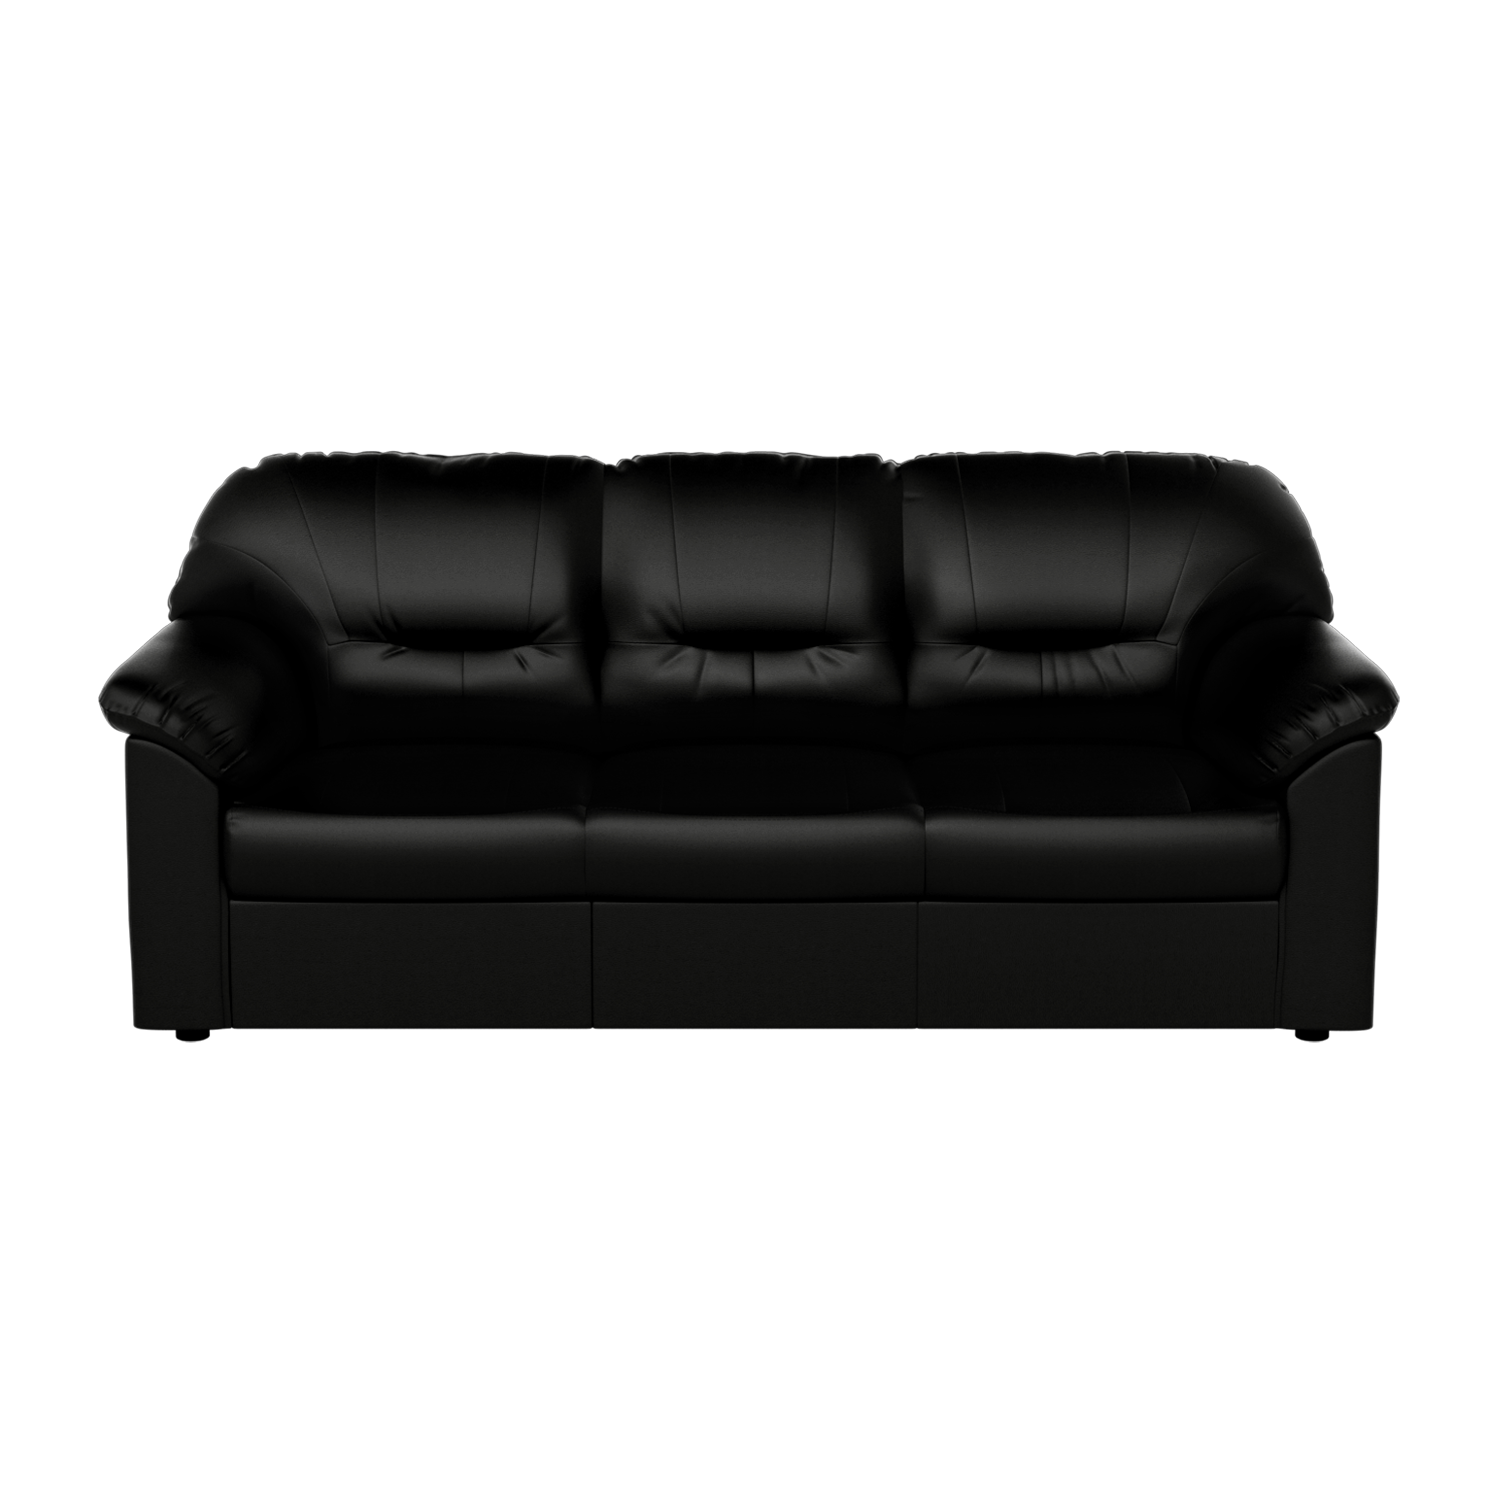 Rio 3 Seater Sofa In Leatherette, Sofa Leather Black